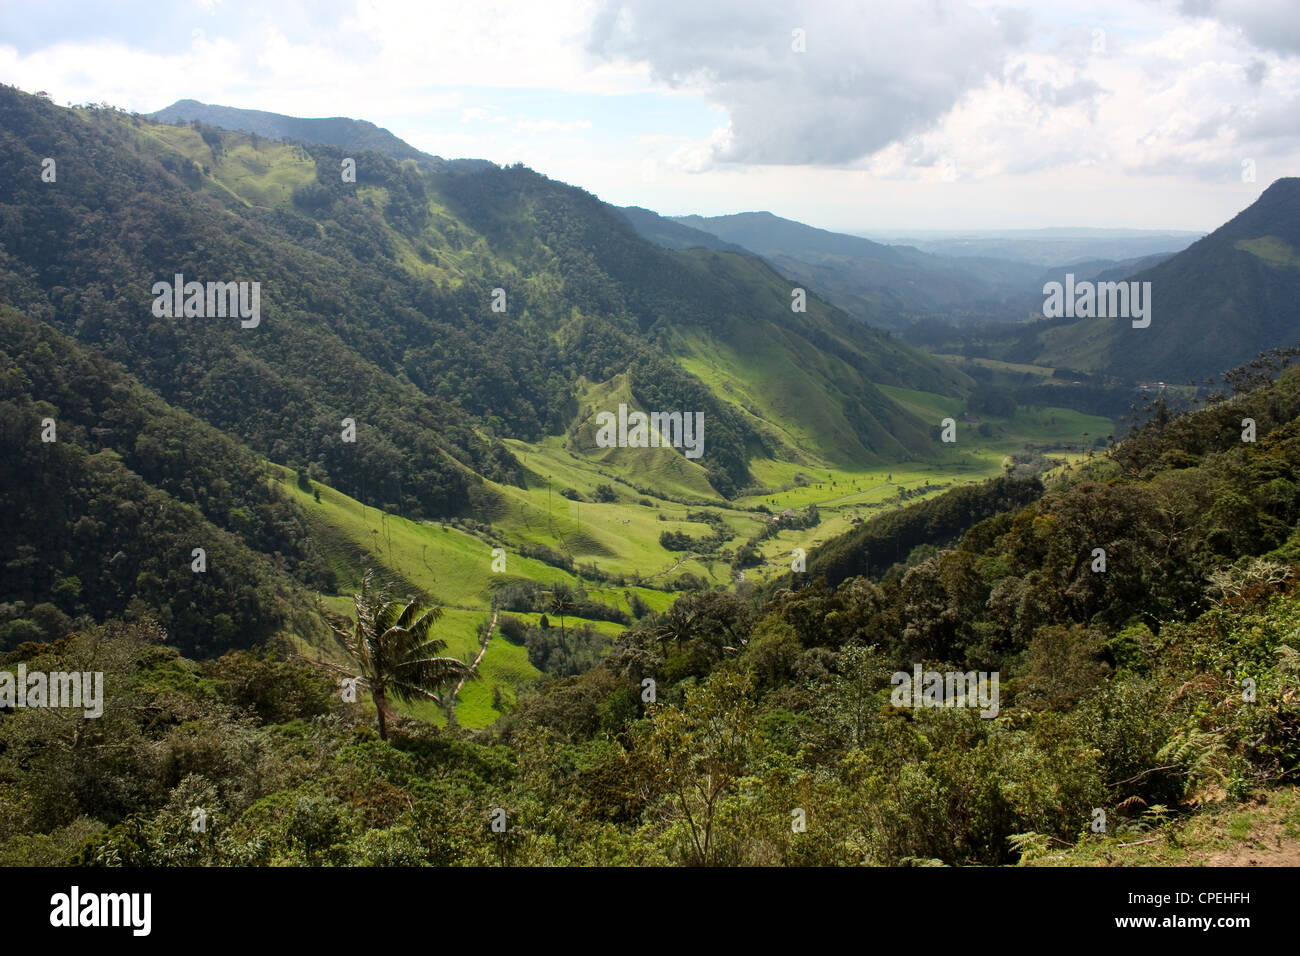 Cocora Valley, the gateway to Parque Nacional Natural de los Nevados. Andean Colombia Stock Photo